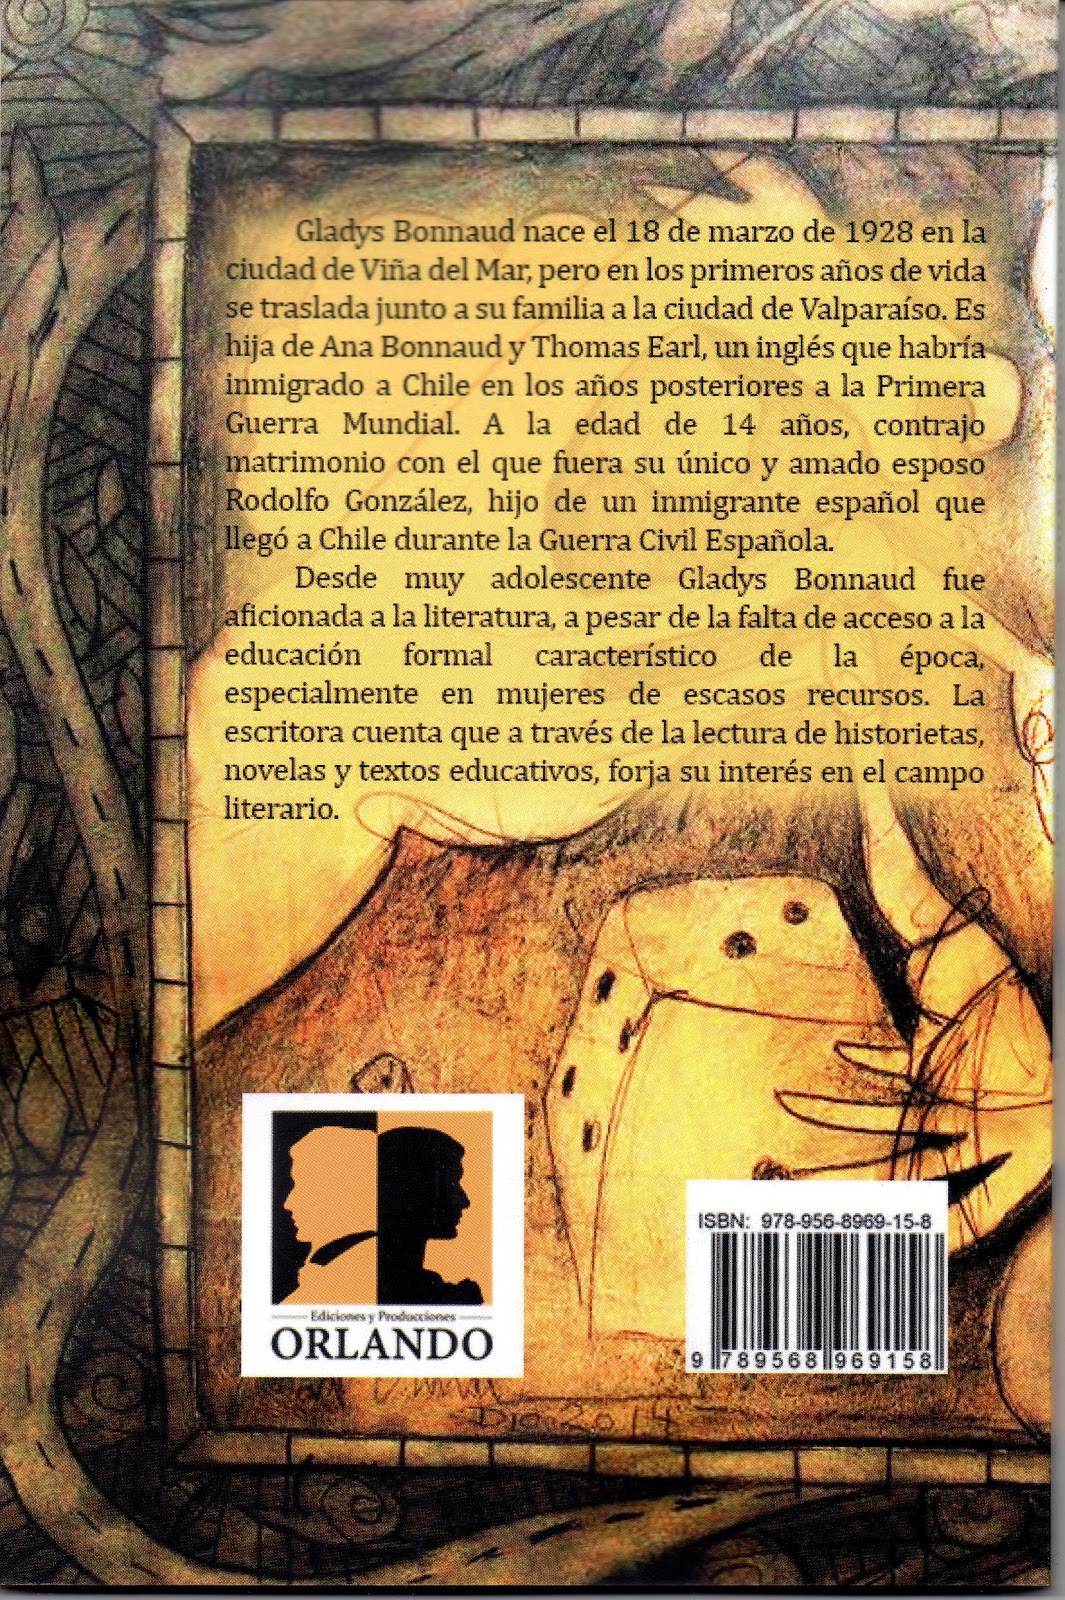 Ediciones y Producciones ORLANDO: Portada y contraportada libro de cuentos  Vacaciones en la Luna de Celeste Earl